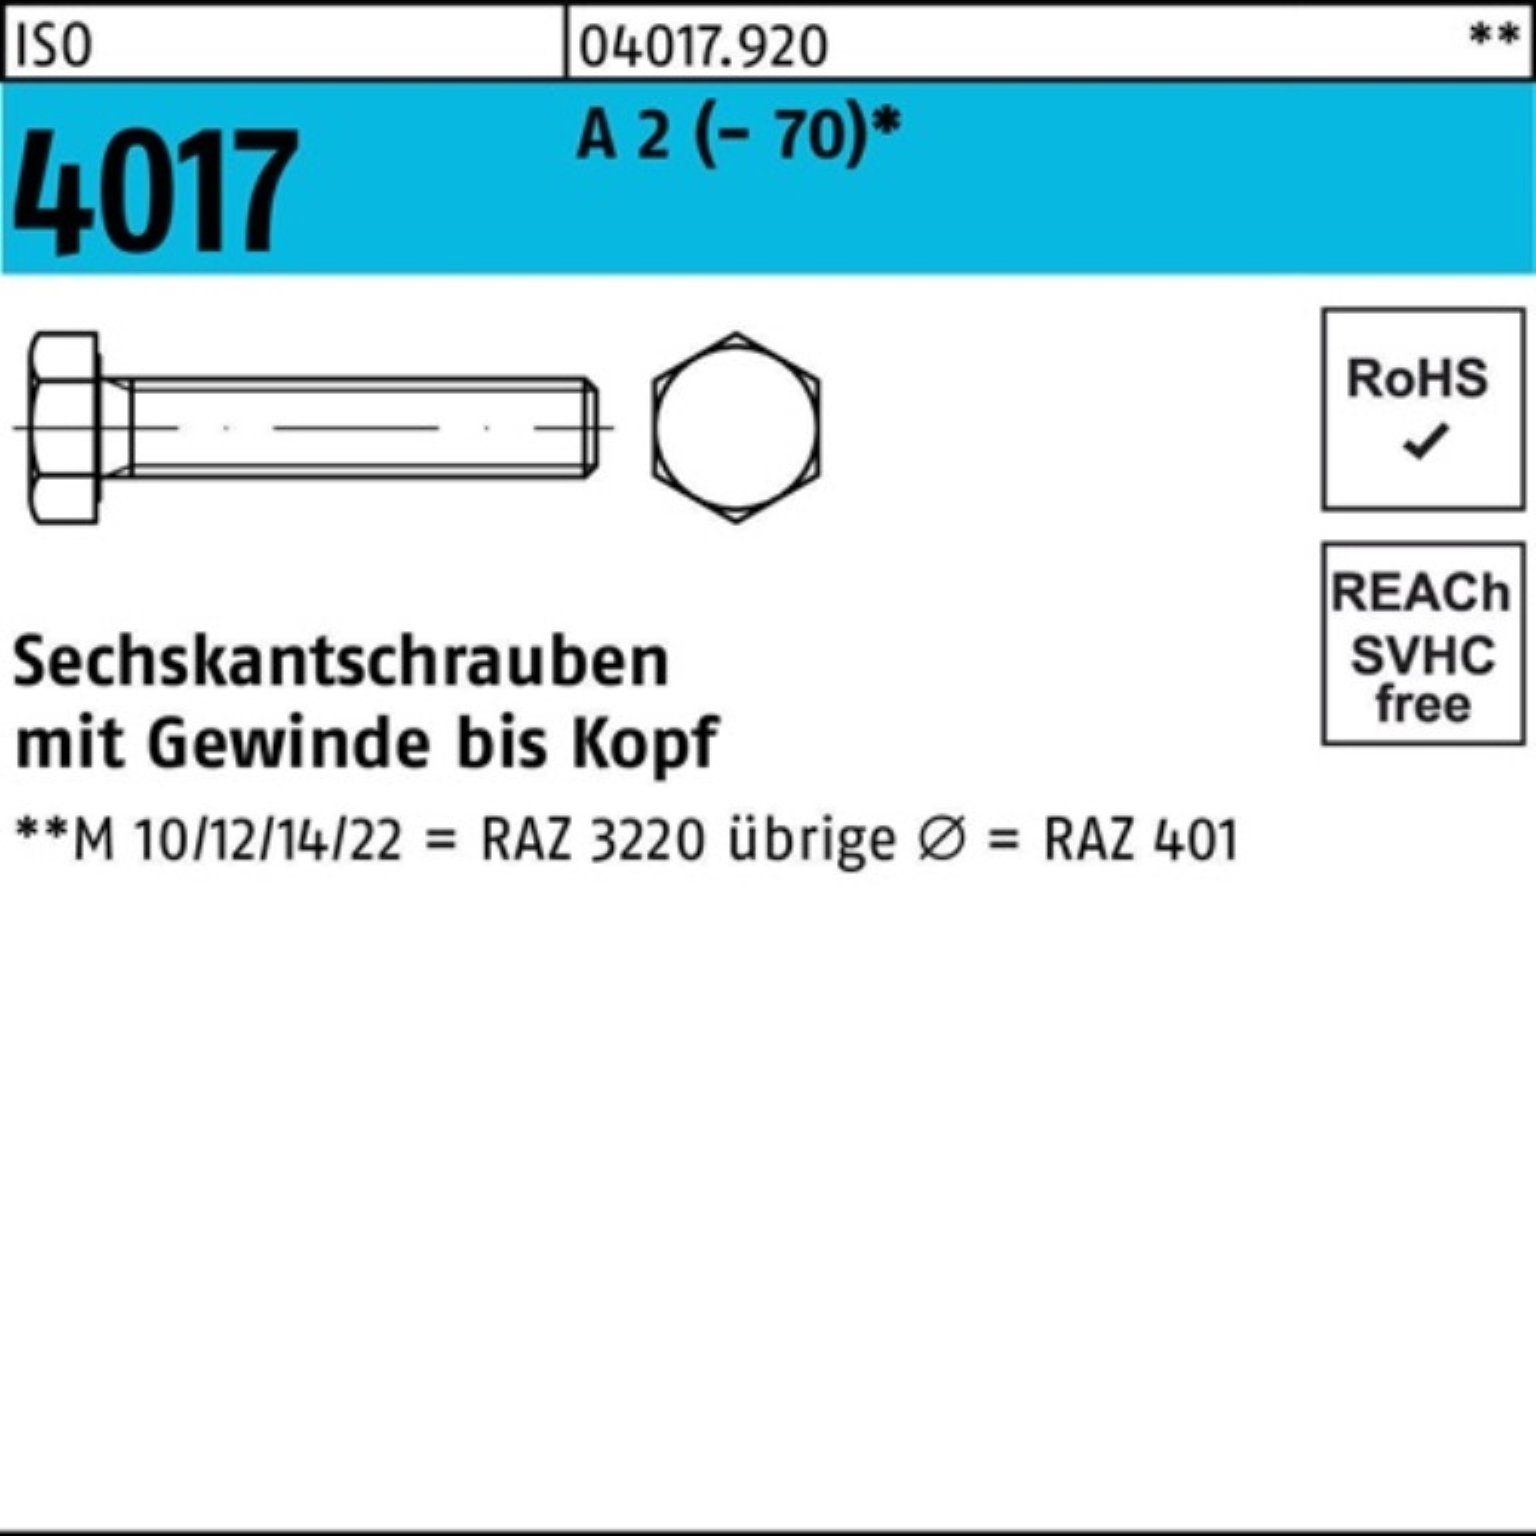 Sechskantschraube Pack Stück M18x VG 100er Sechskantschraube 1 (70) Bufab 2 4017 150 ISO A